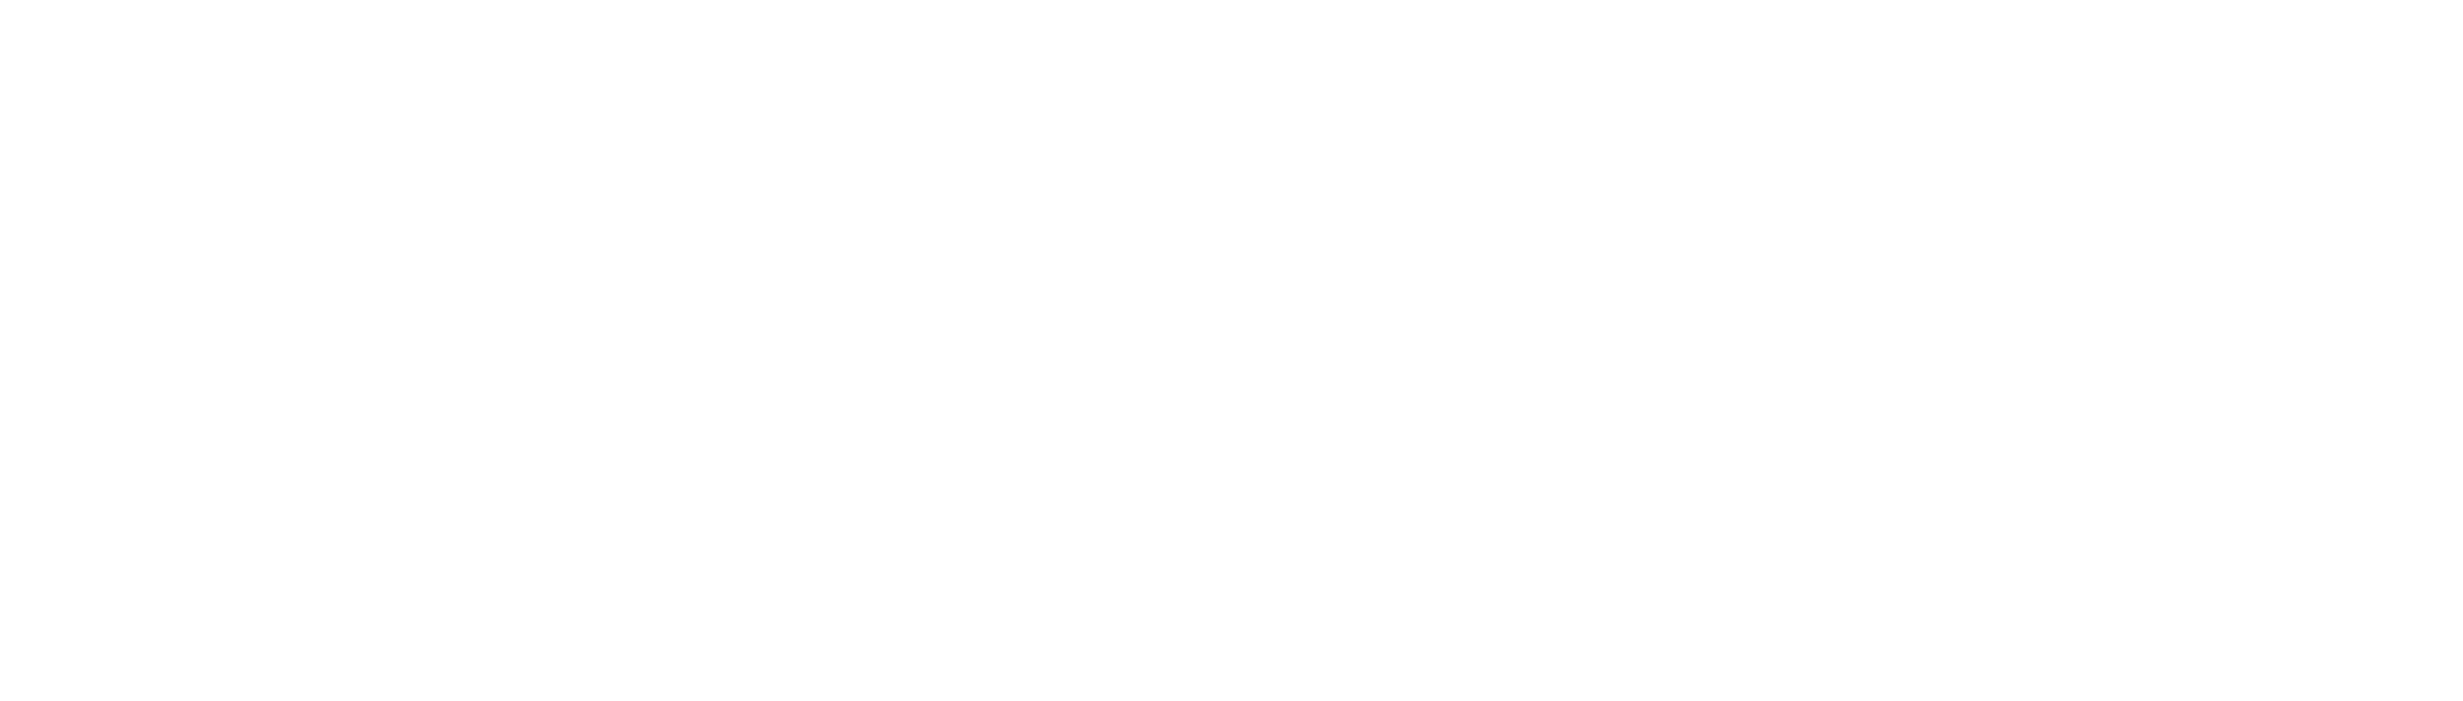 aptitude white logo 1